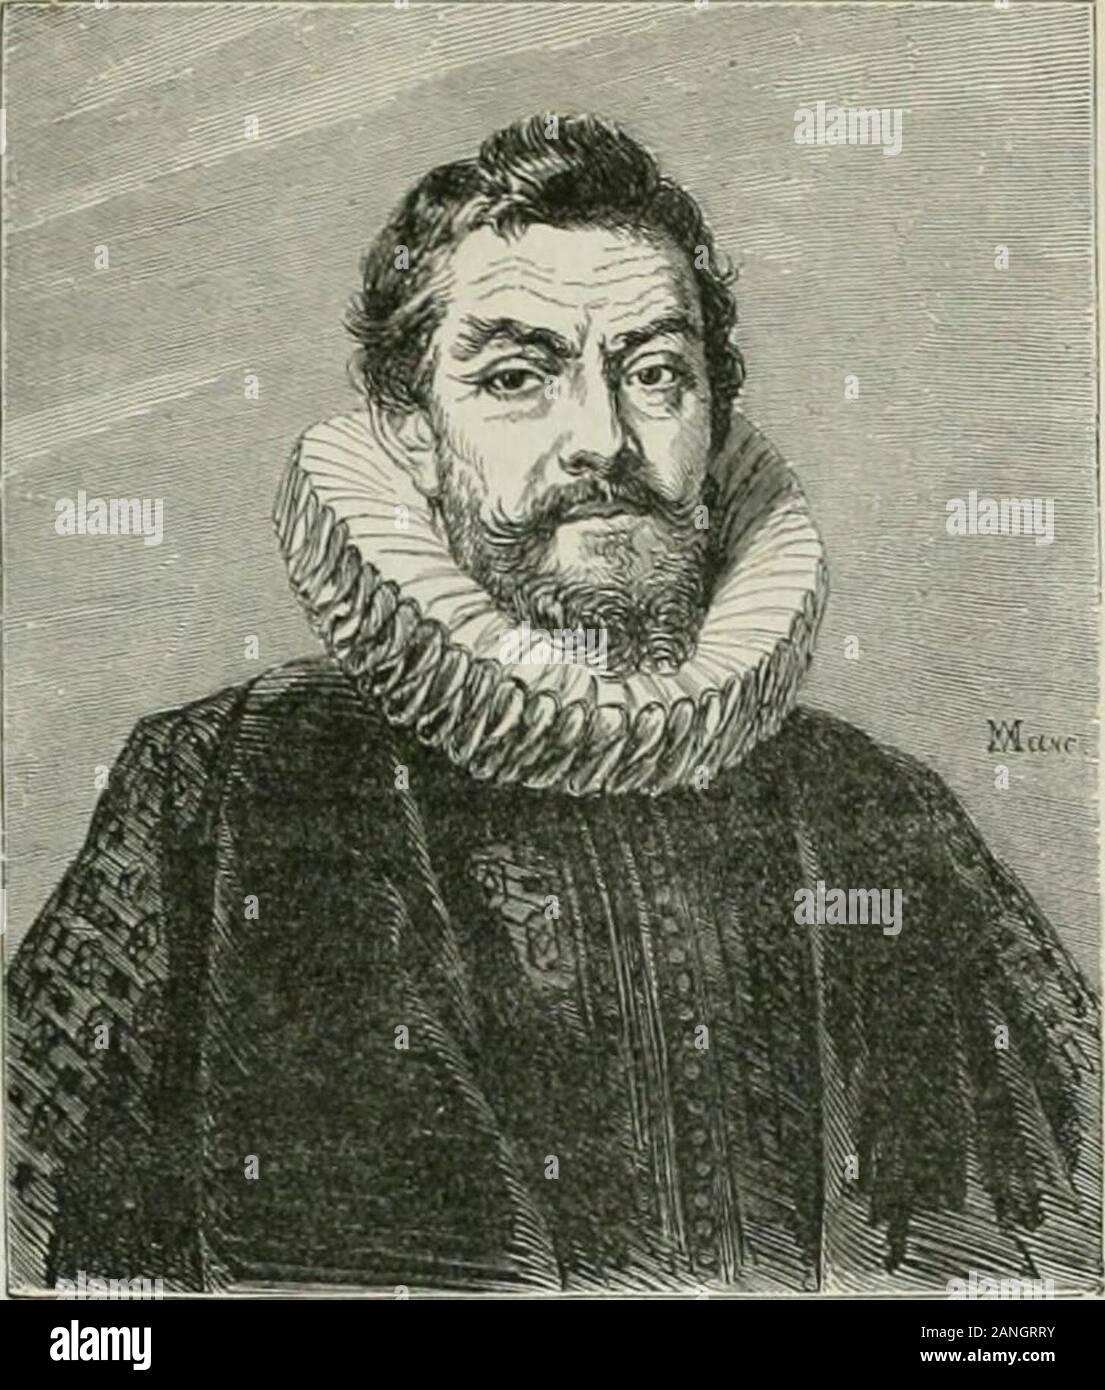 L'illustrazione : ufficiale universel . iiiiûQS du MiisÈo du Louvif. - M. le baron Devicq,ritratto par Rubens. Foto Stock